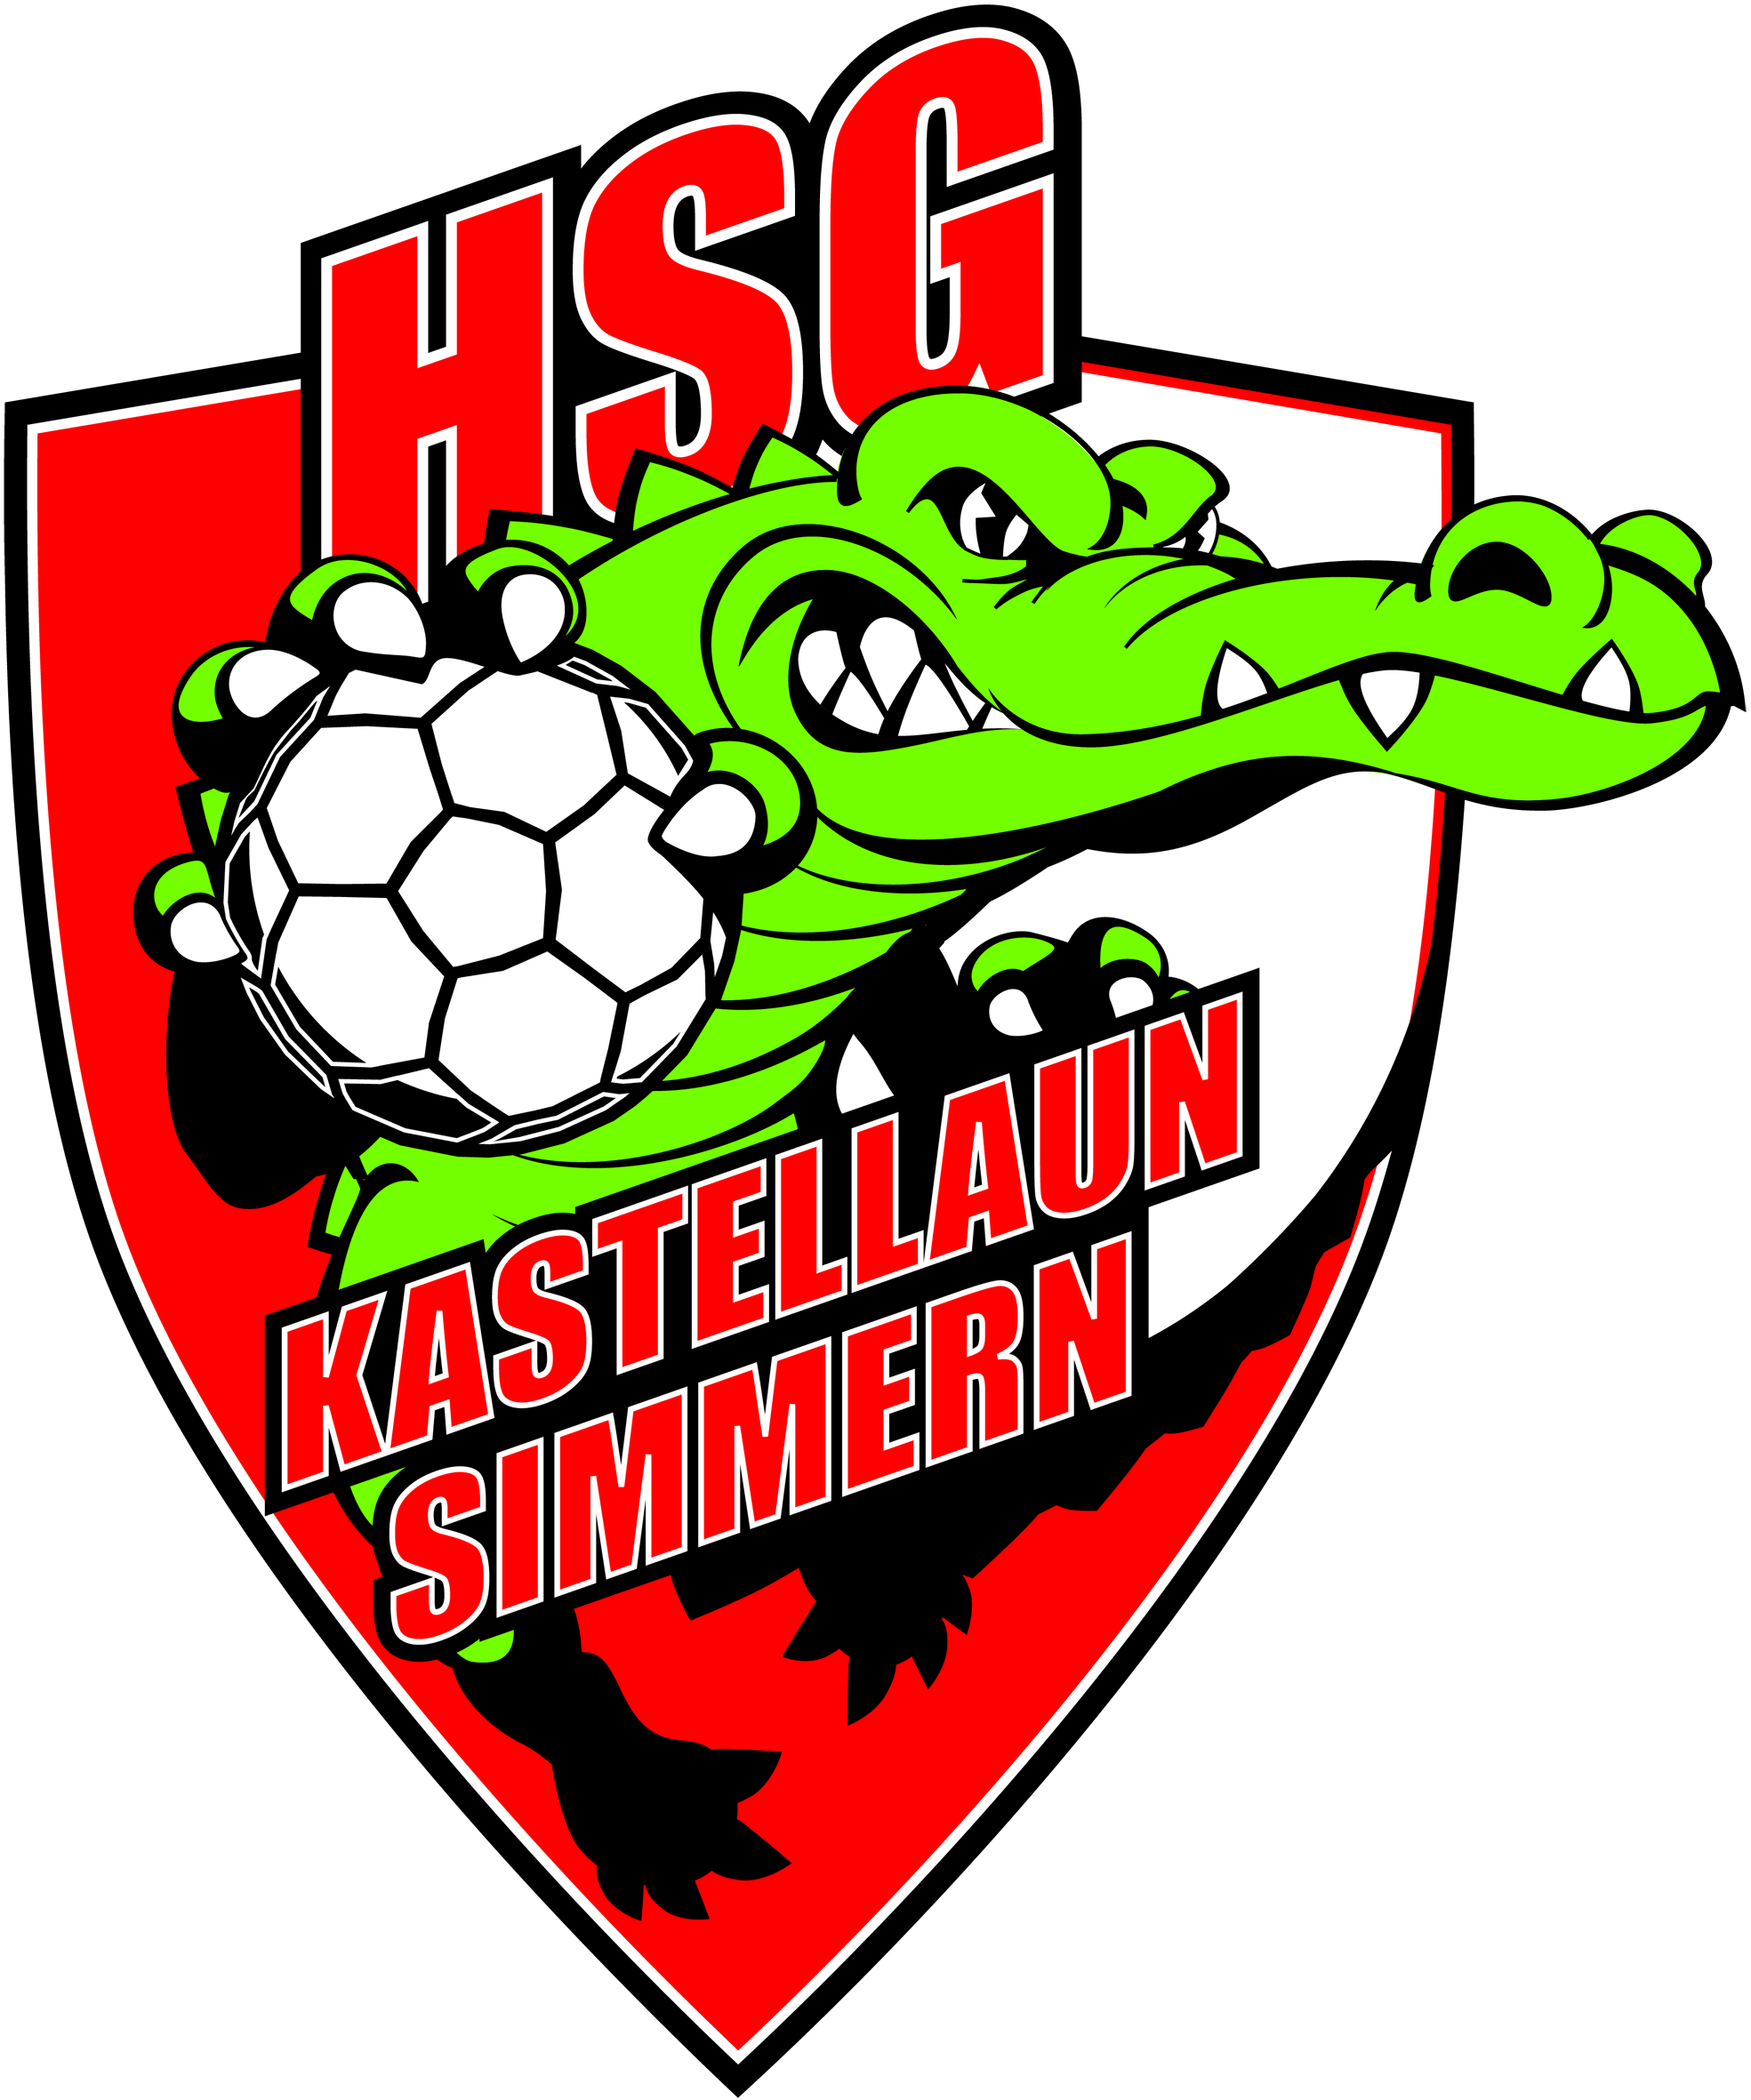 HSG Kastellaun/Simmern